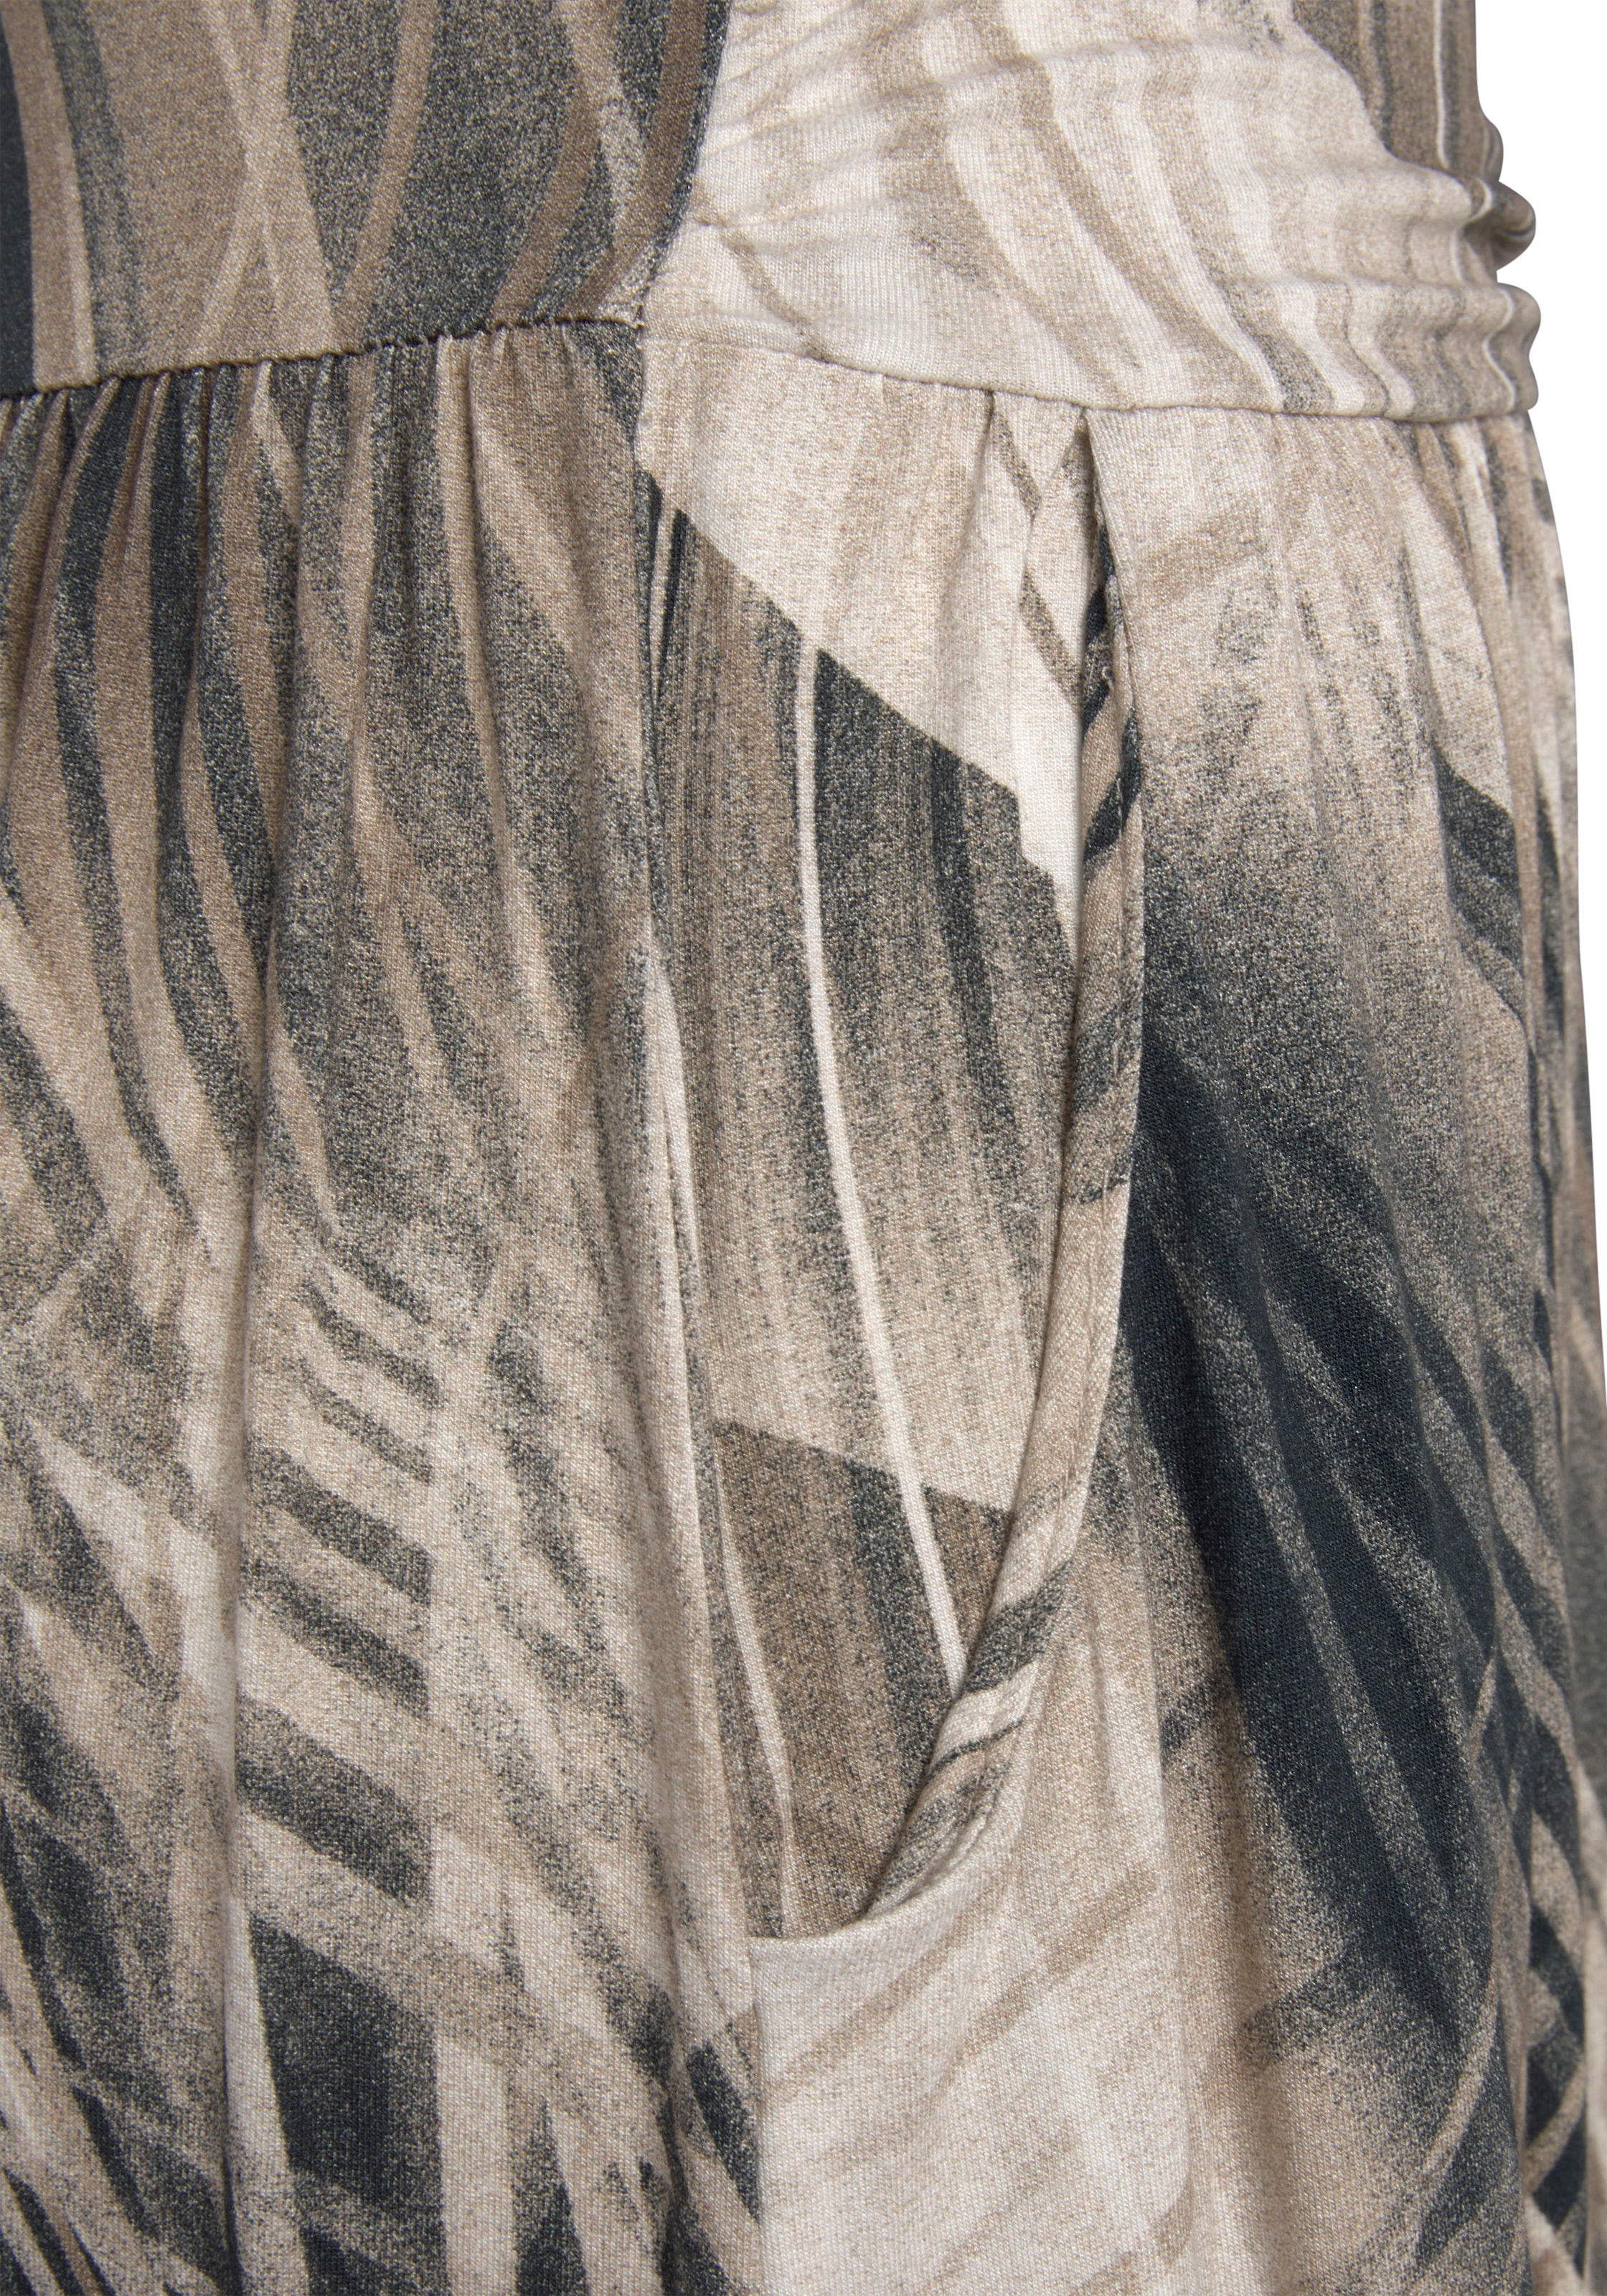 LASCANA Maxikleid, mit Alloverdruck und Taschen, Bandeau-Kleid, Sommerkleid, schulterfrei